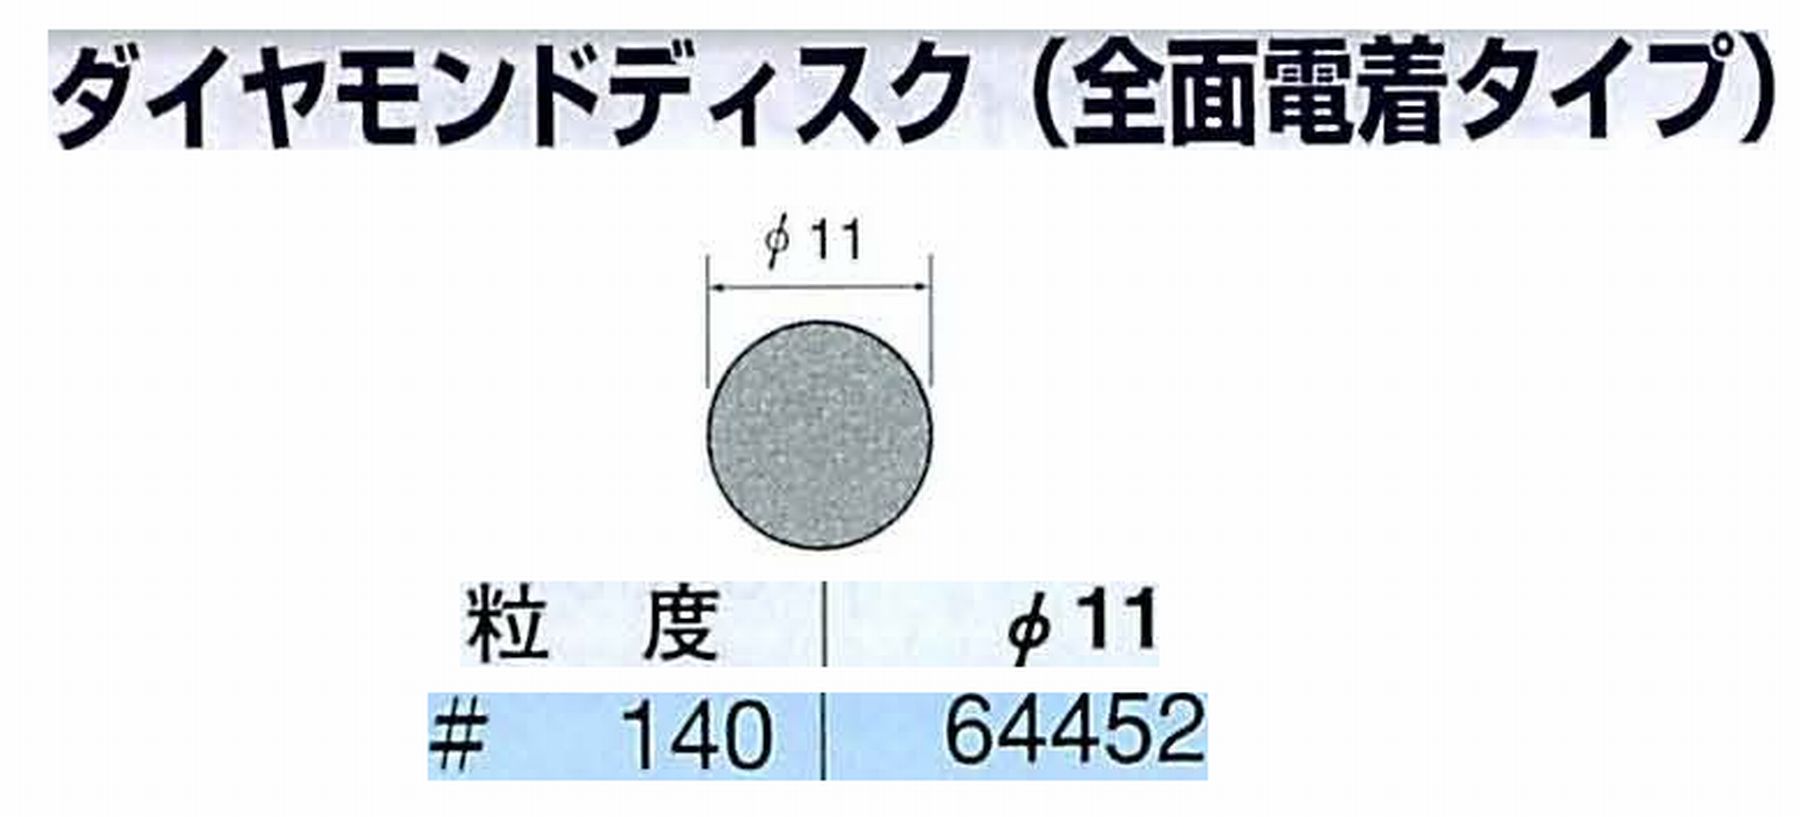 ナカニシ/NAKANISHI アングルグラインダ(電動・エアー) アングルアタッチメント専用工具 ダイヤモンドディスク(全面電着タイプ) 64452